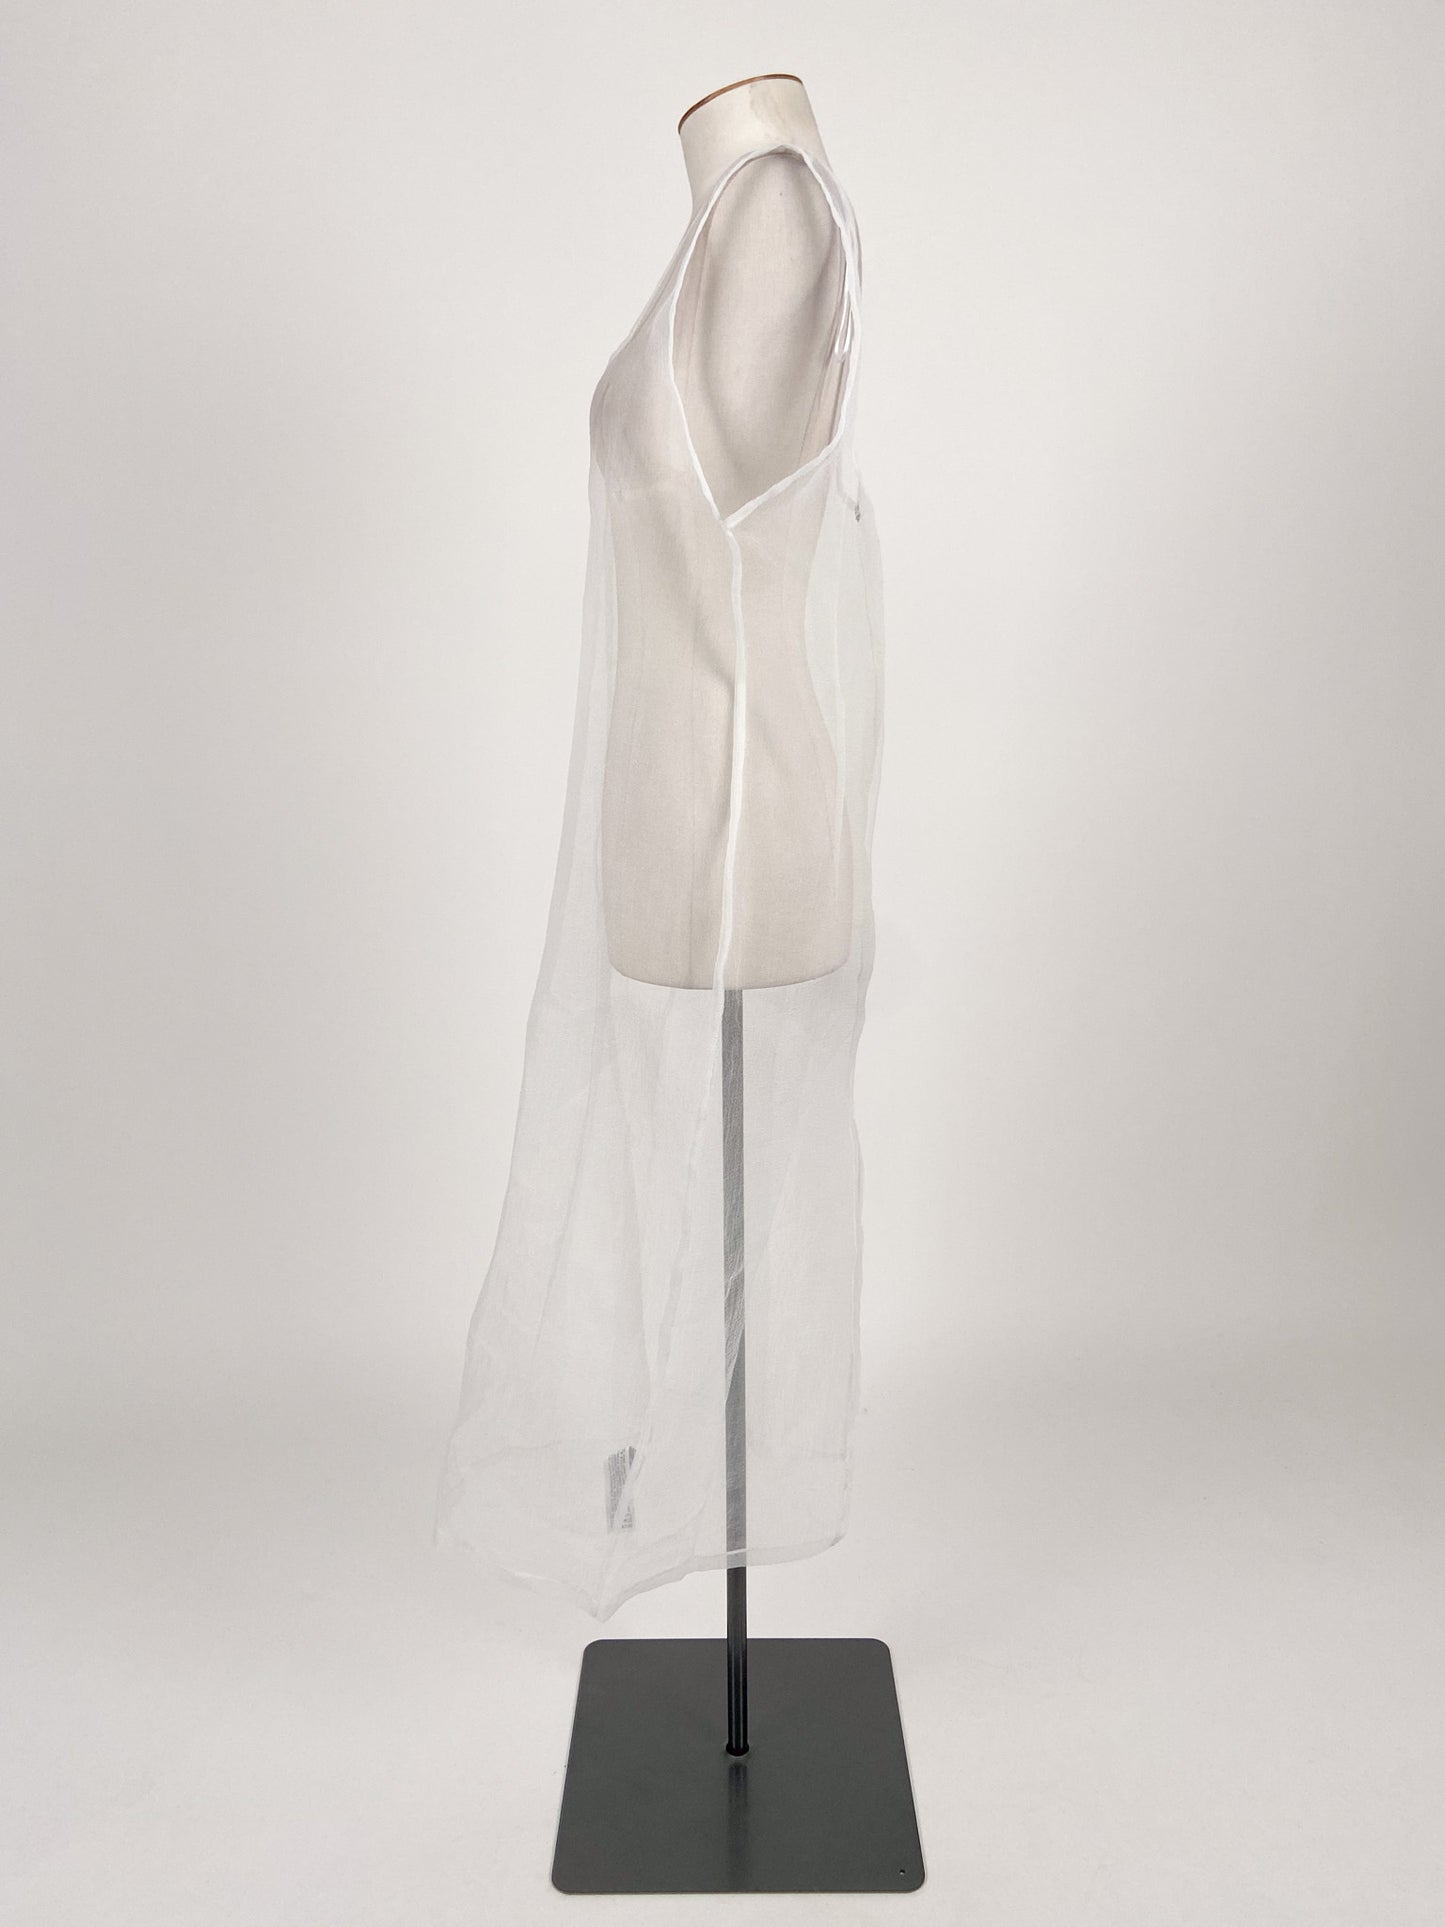 Zara | White Casual Dress | Size S